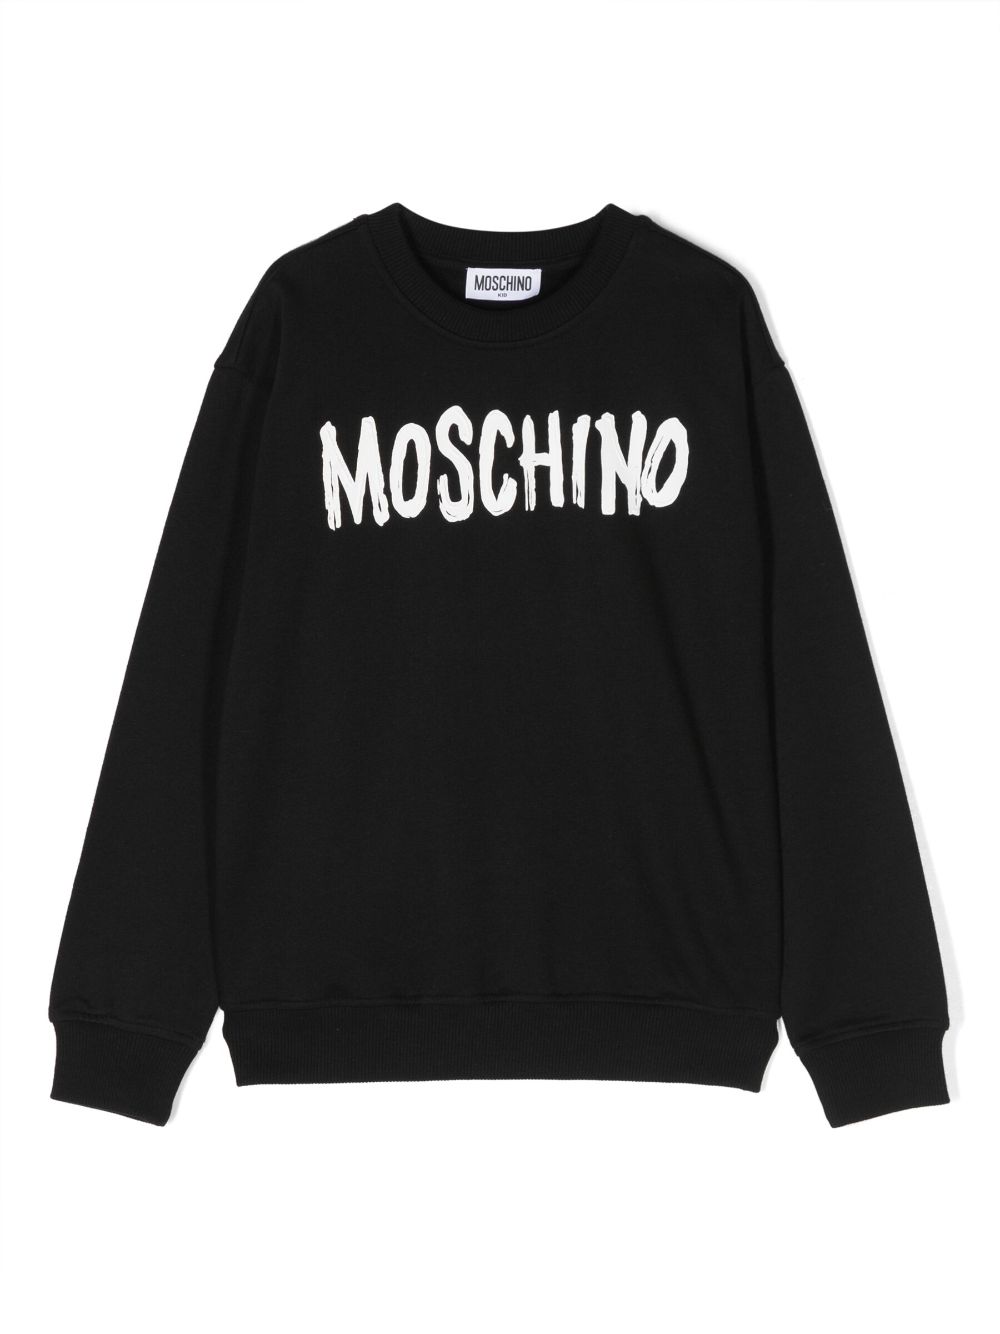 Moschino Kids' Logo棉质混纺运动衫 In Nero Black